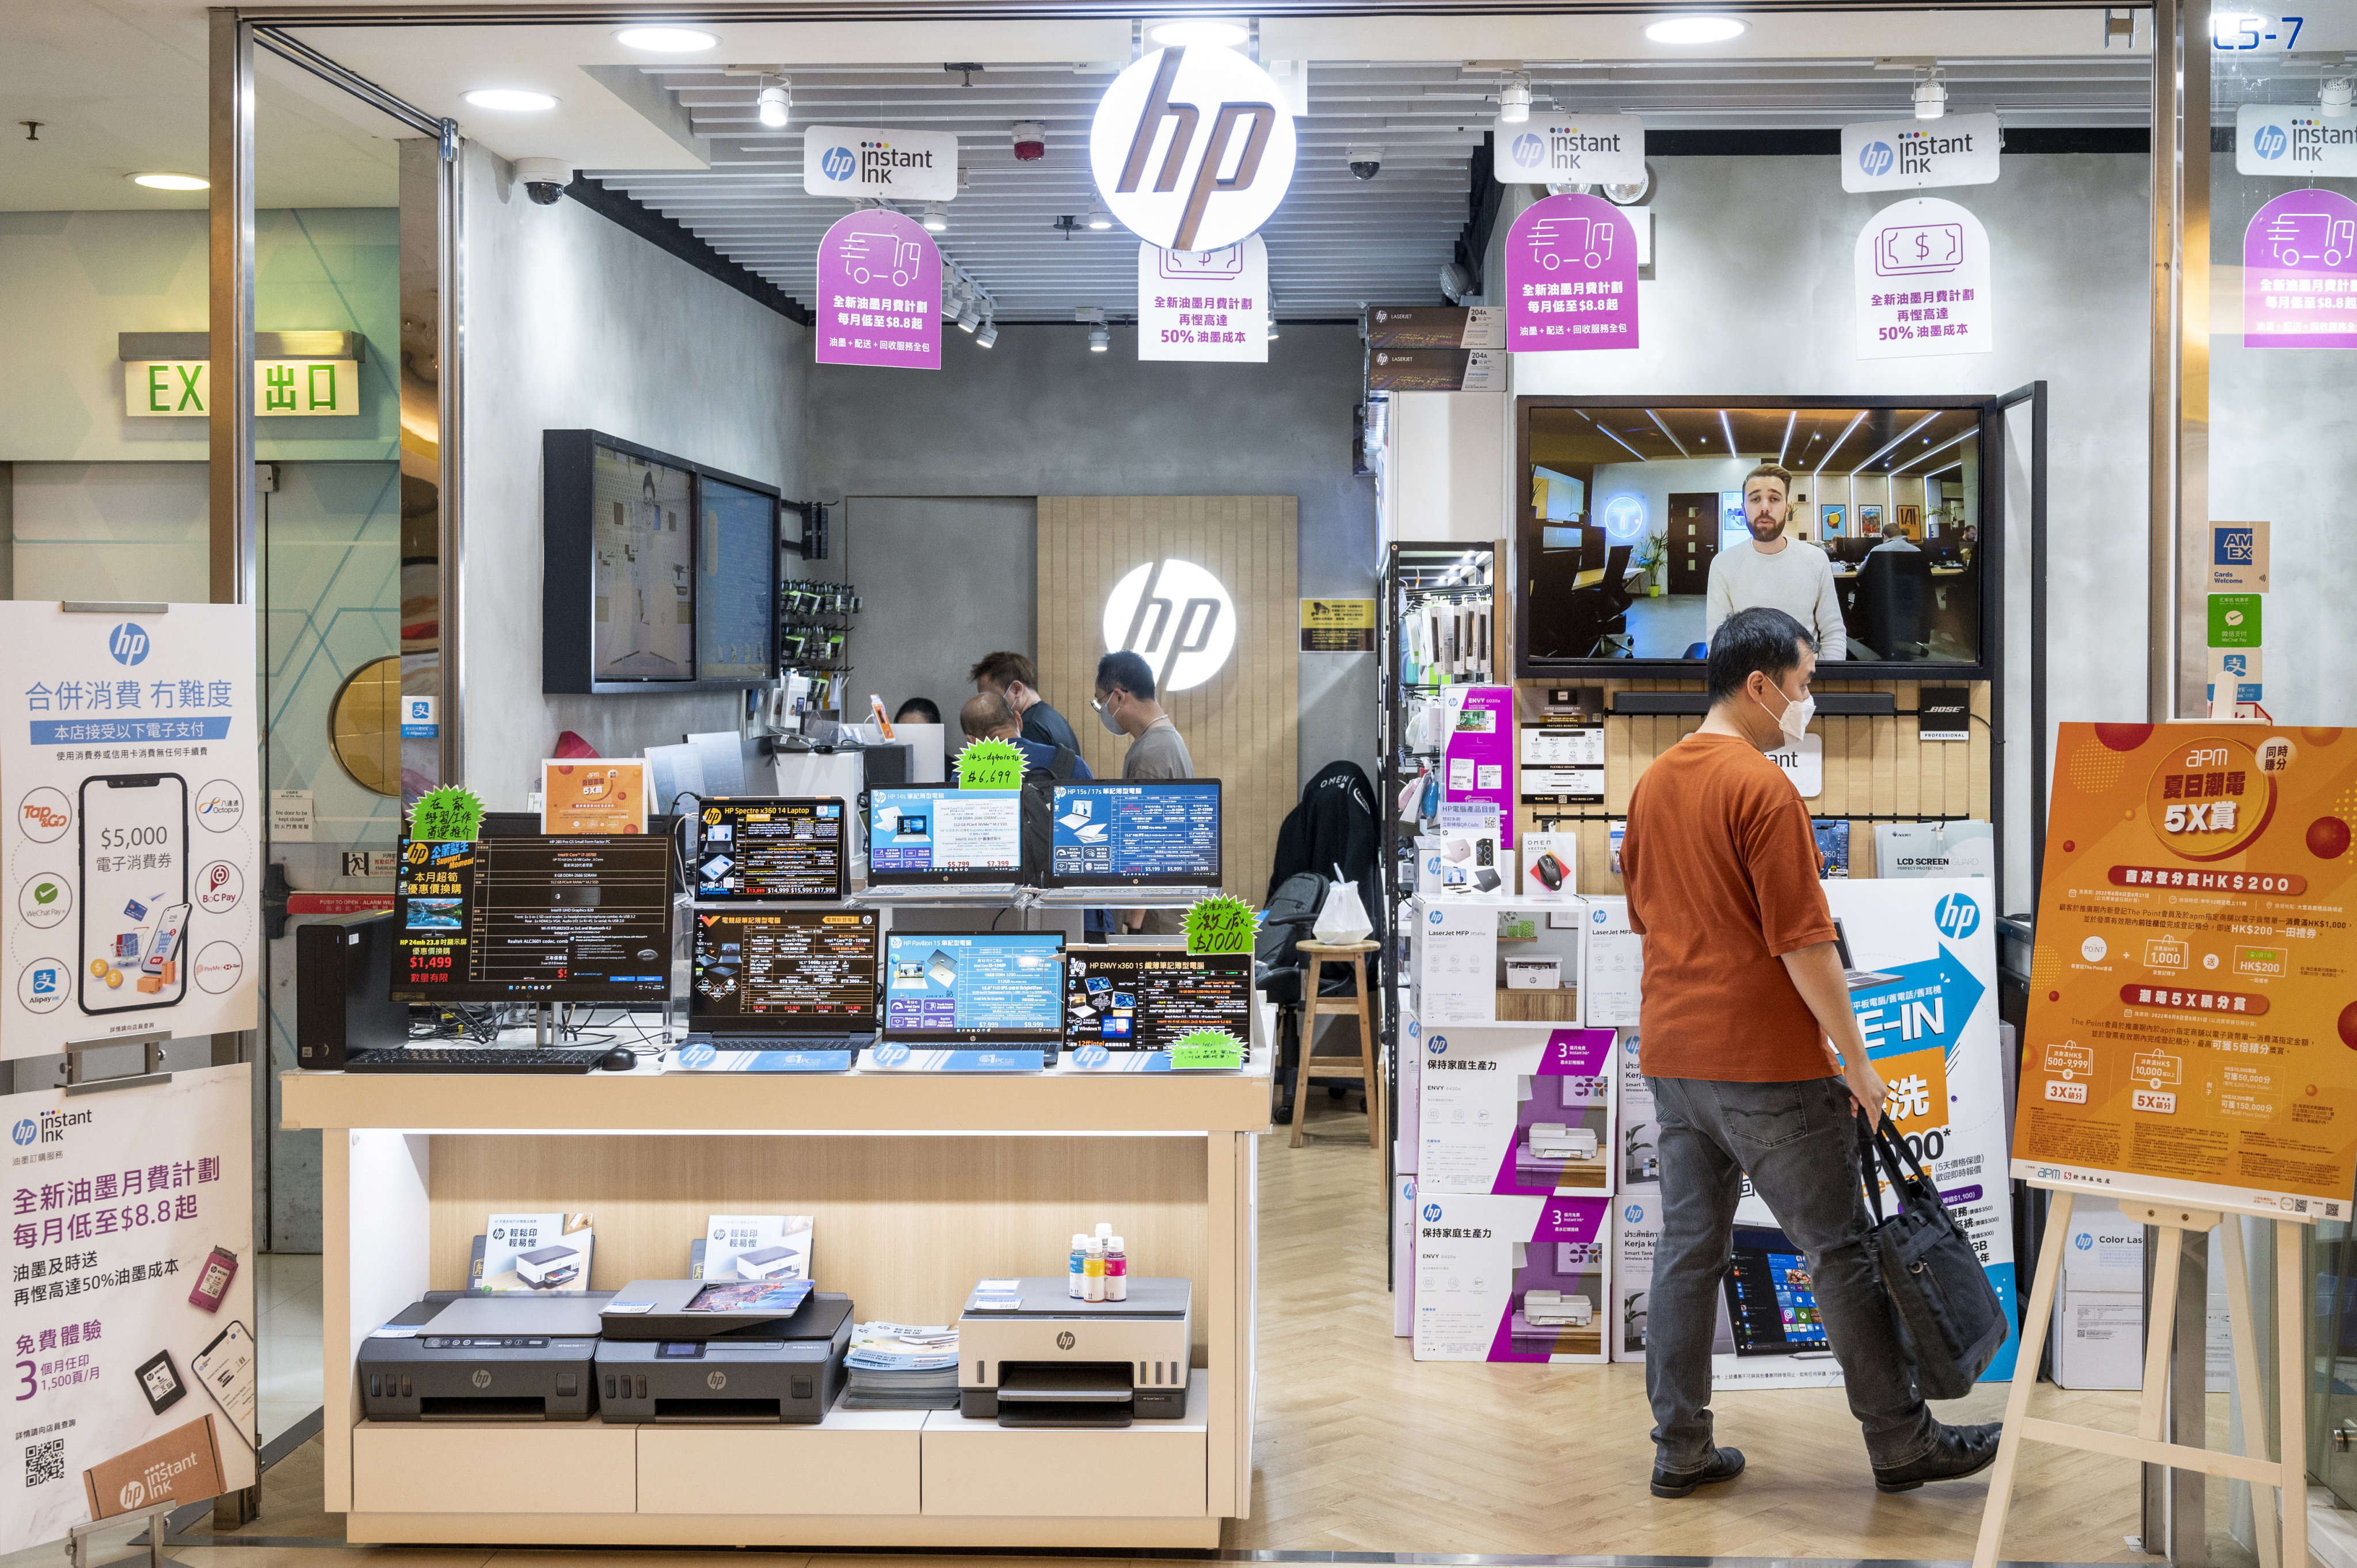 Производитель ПК HP подчеркивает приверженность Китаю, стремясь диверсифицировать производство в Таиланде и Мексике.